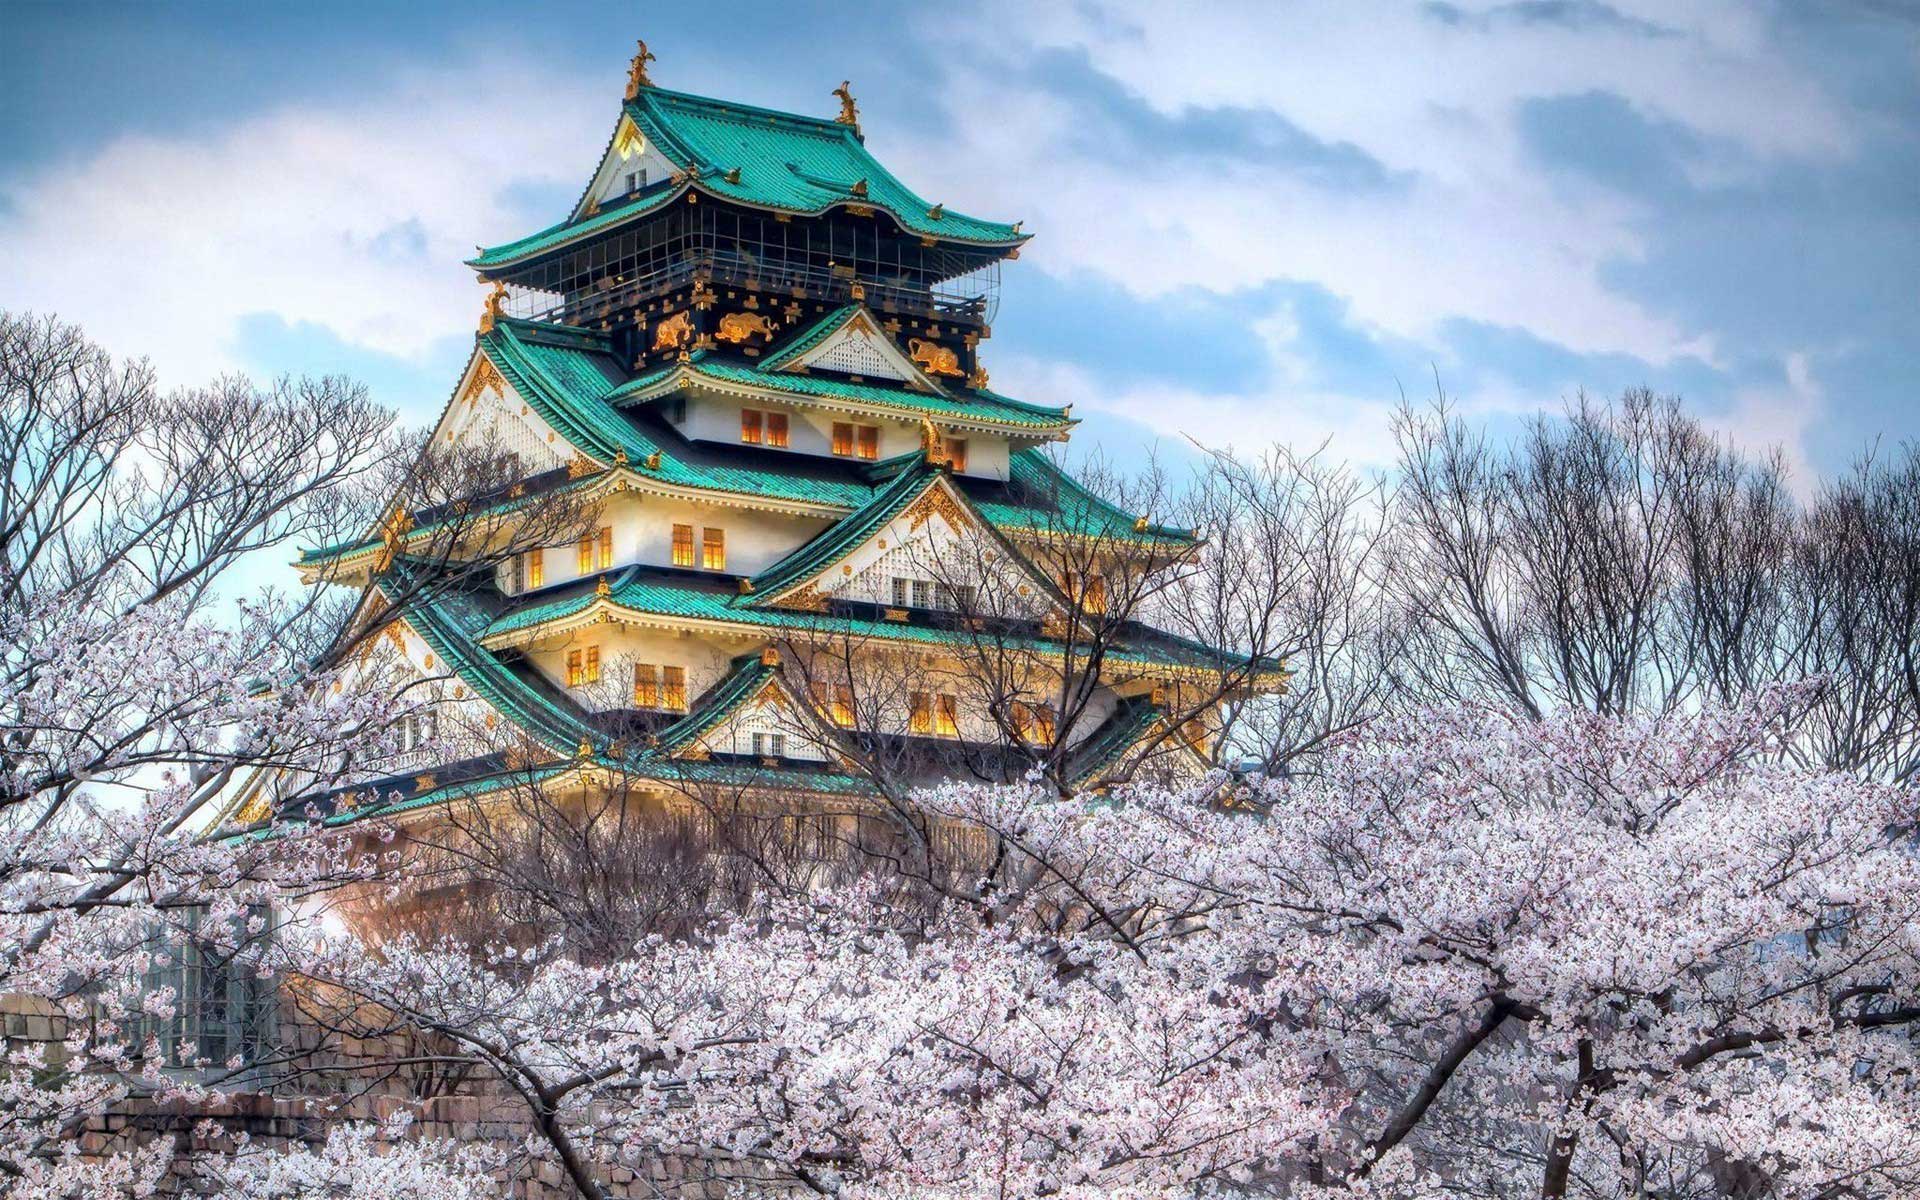 Скачать обои Осакский Замок на телефон бесплатно